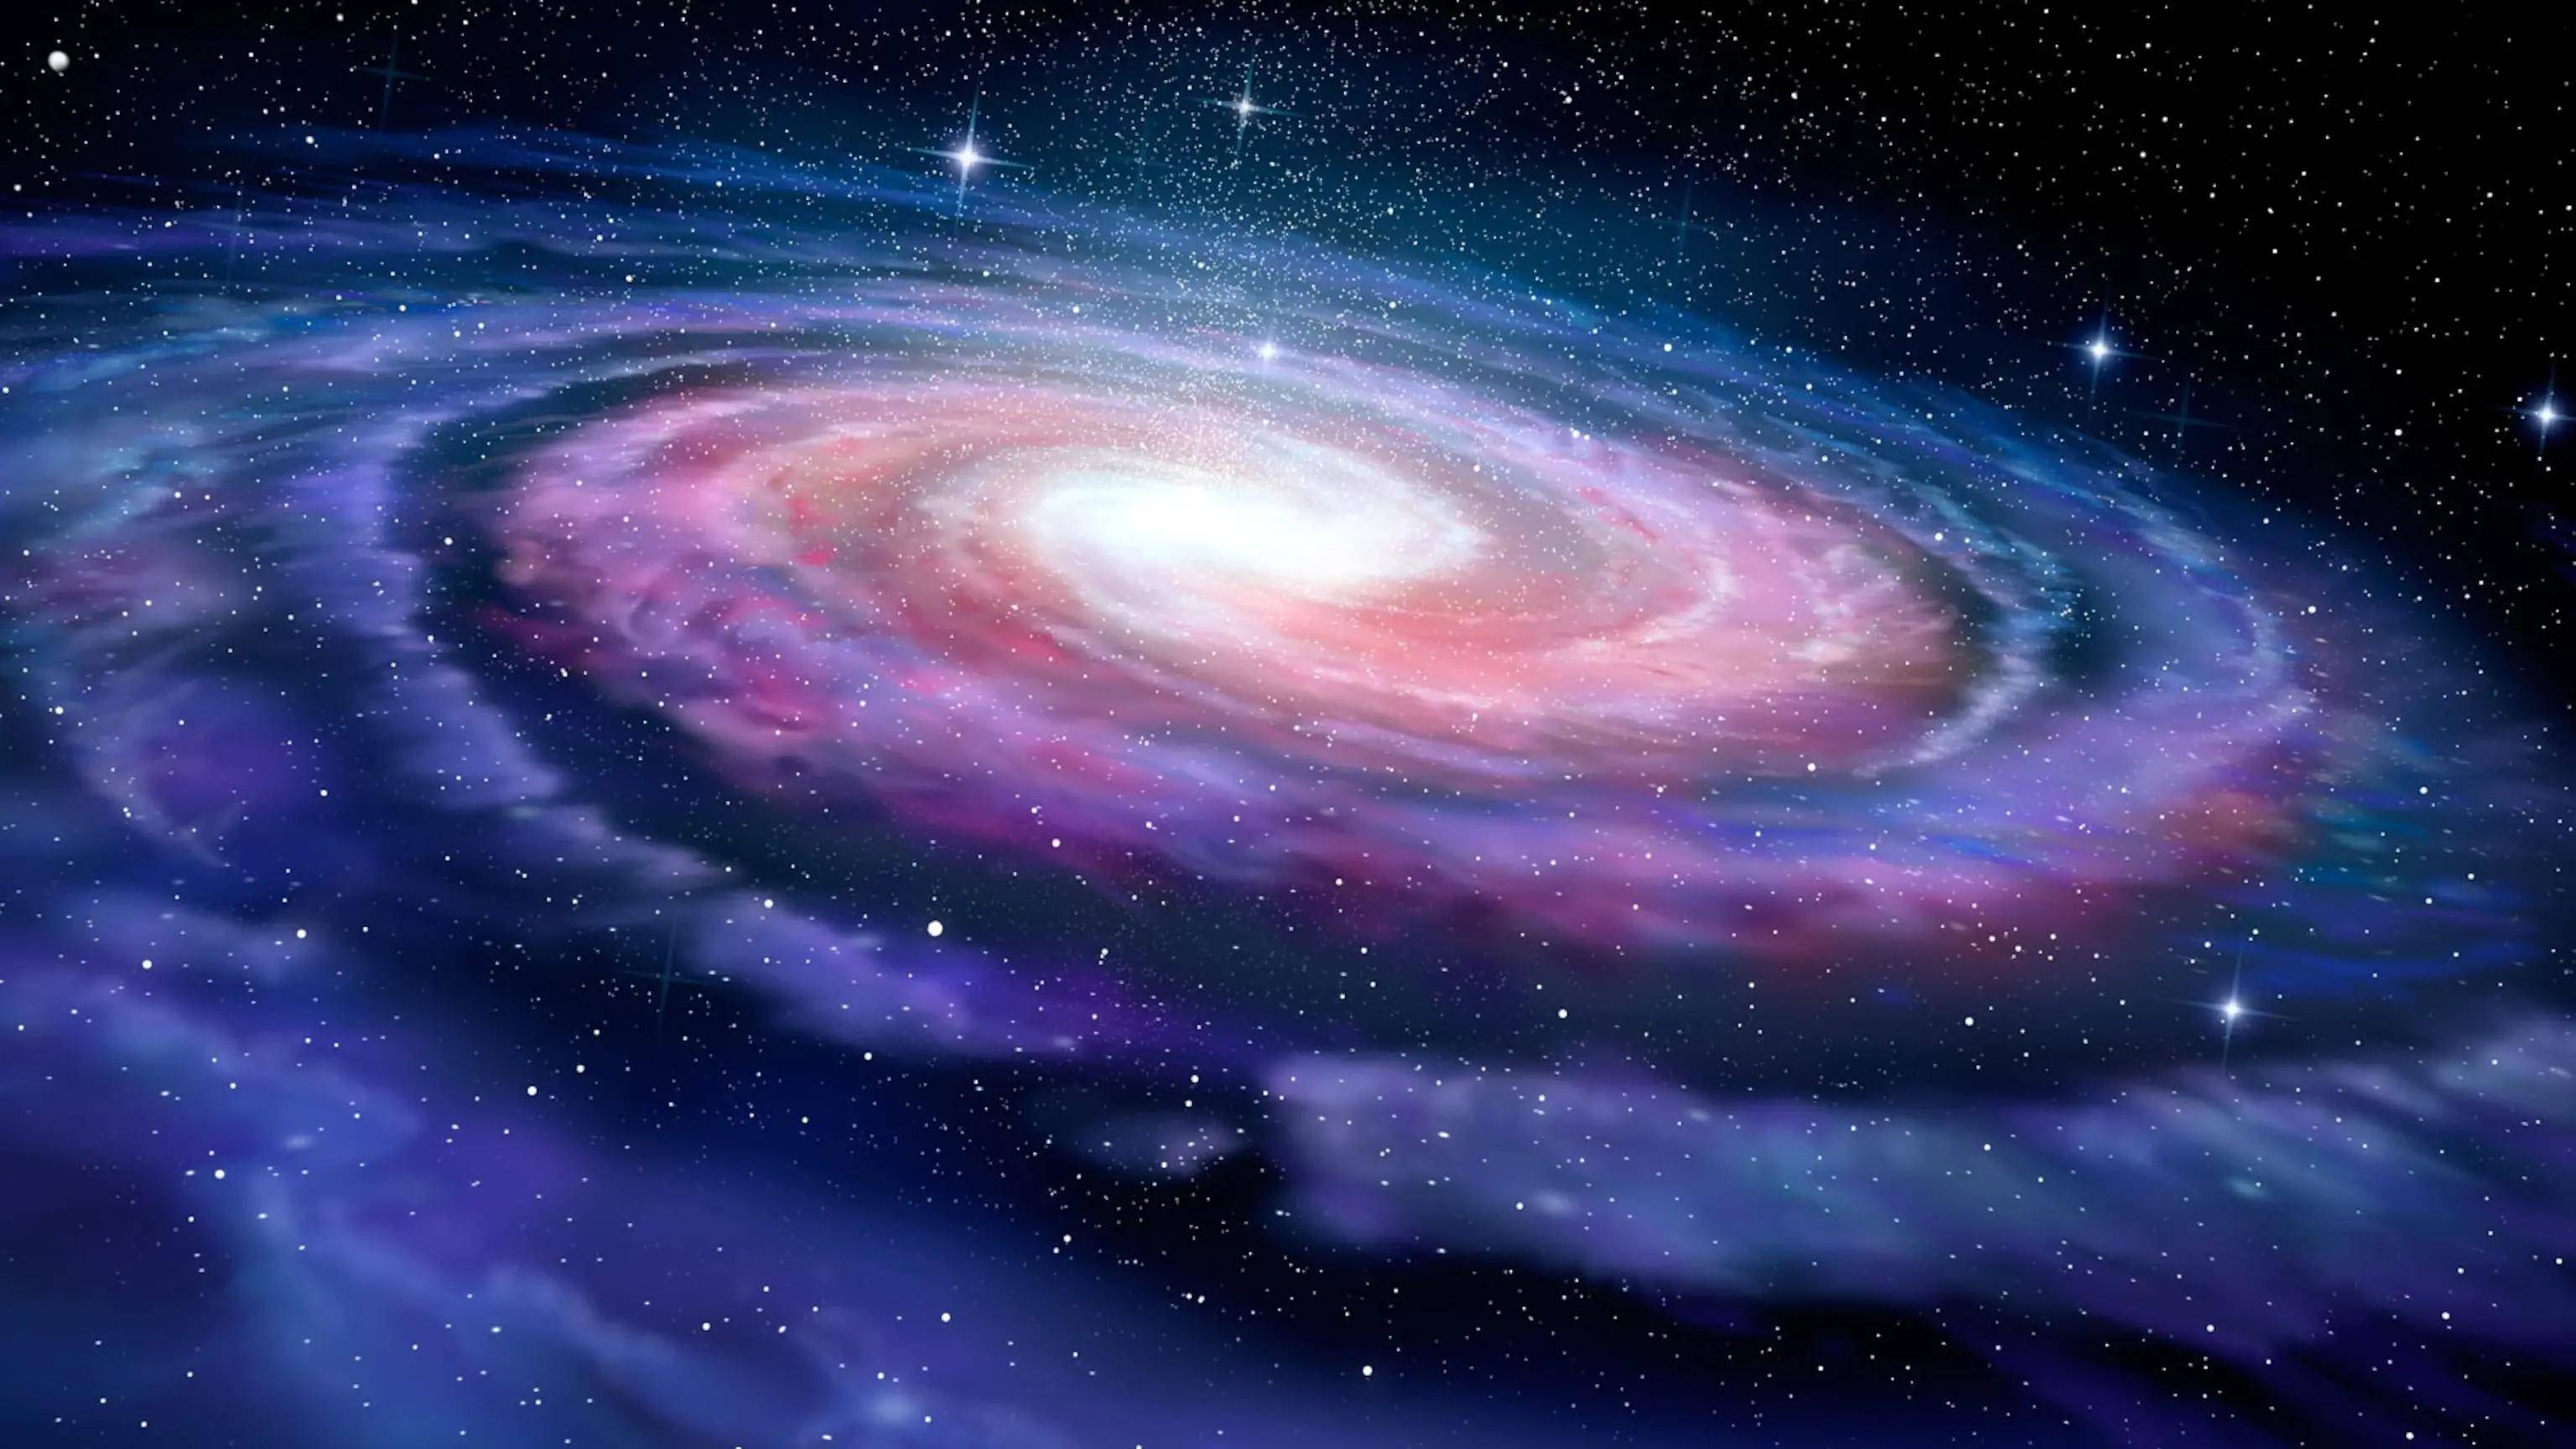 人类从未离开过太阳系,那么银河系的全景照片是怎么来的?